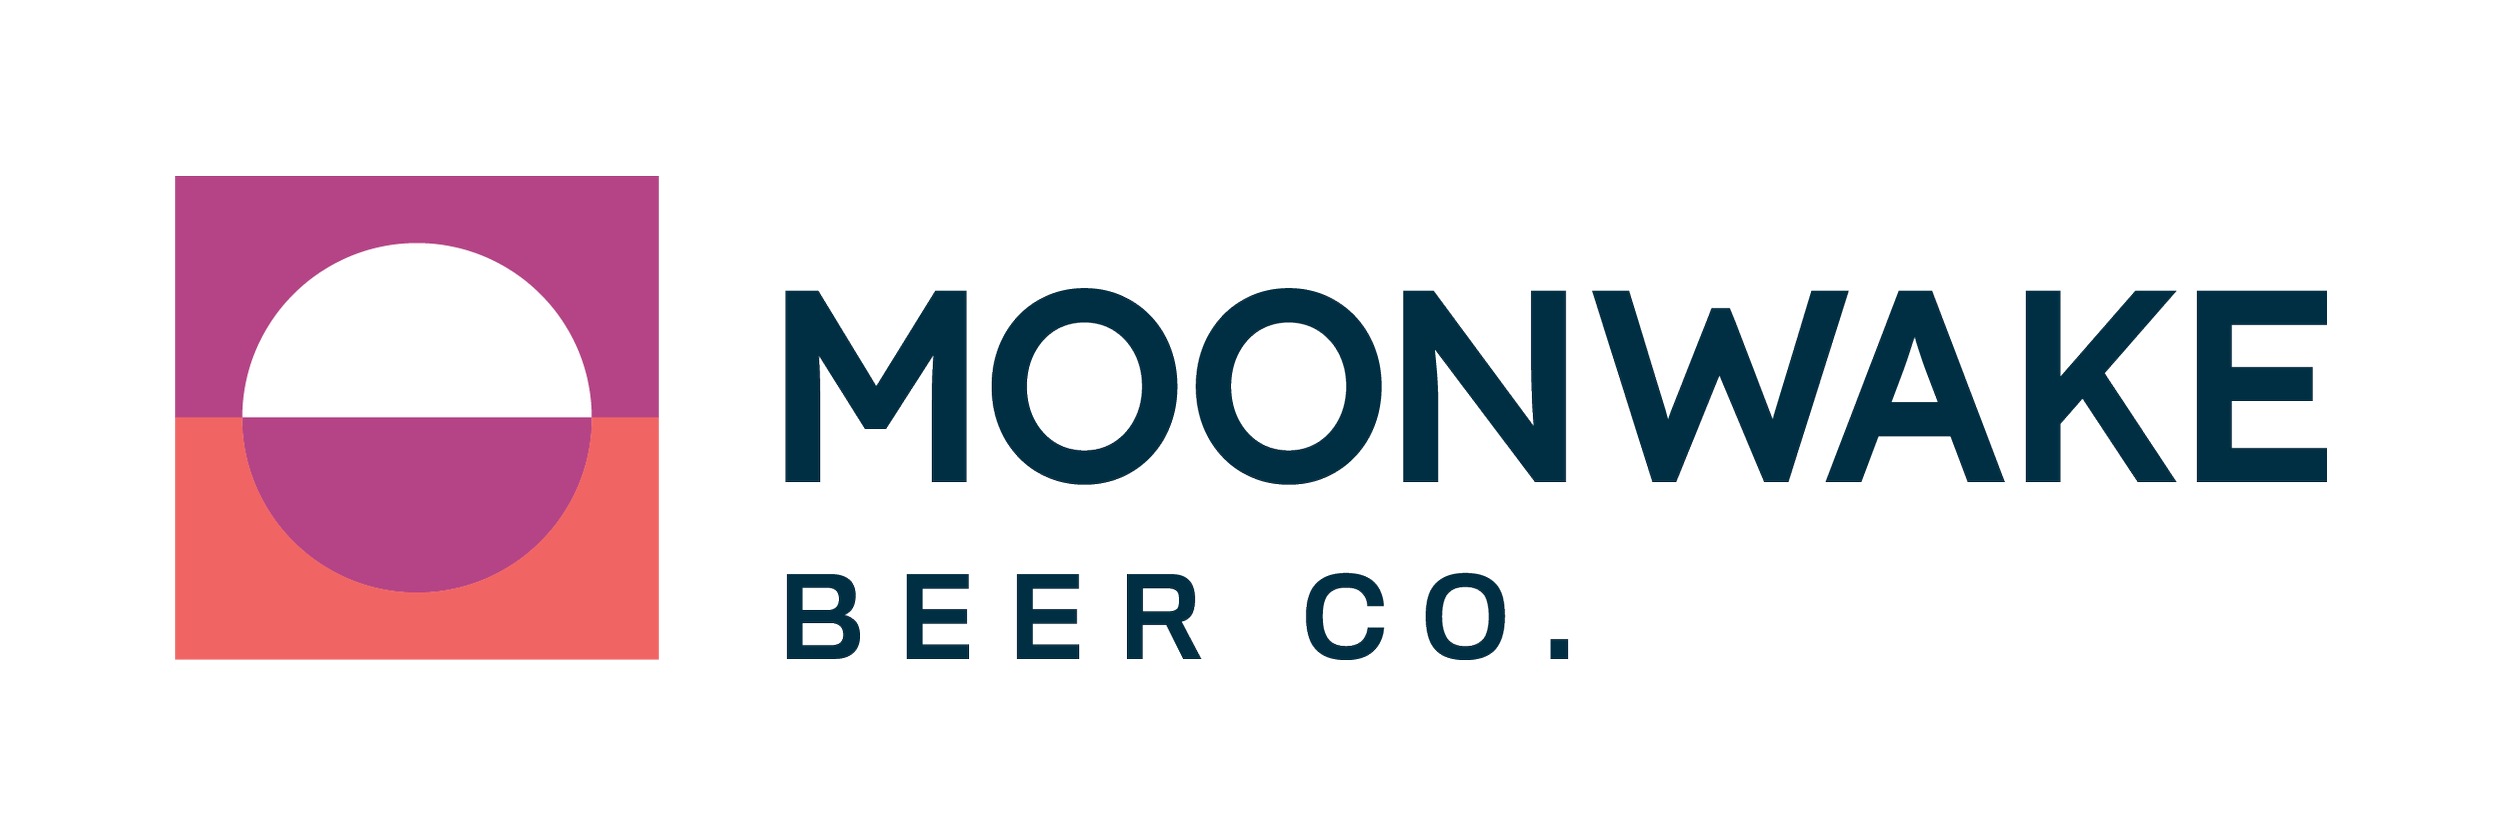 Moonwake Beer